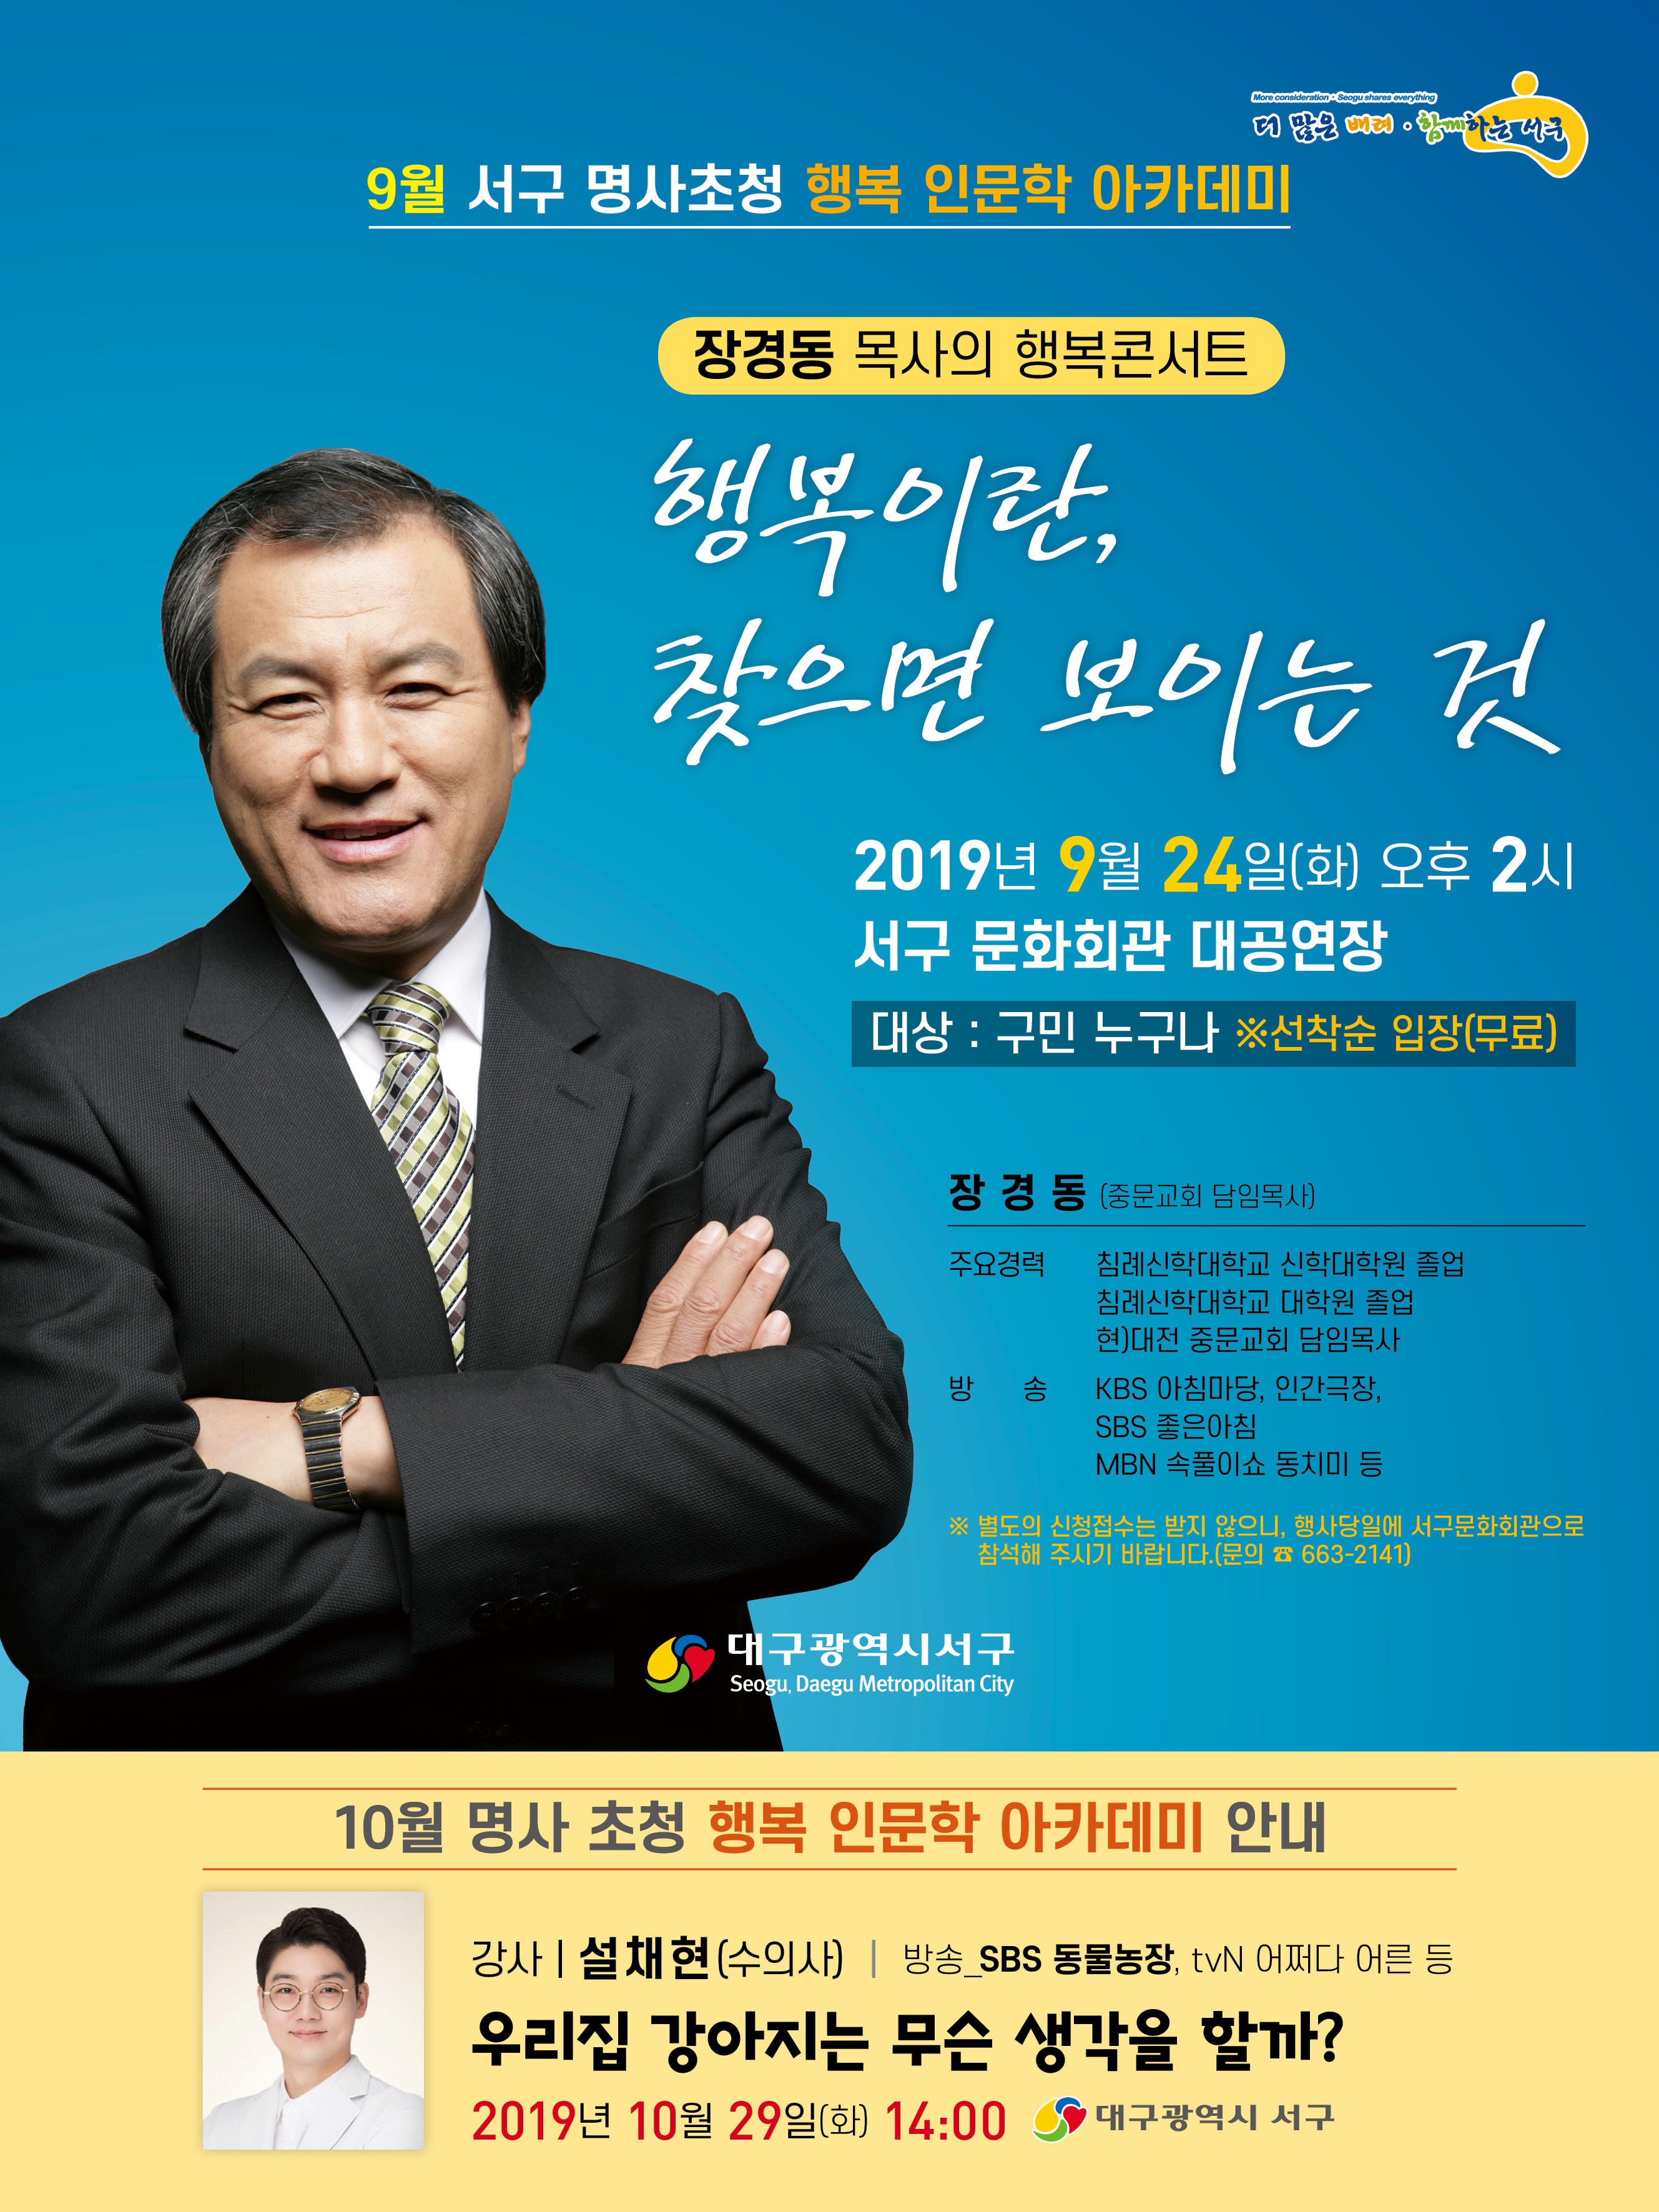 9월 명사초청(장경동 목사) 행복인문학 아카데미 개최 1